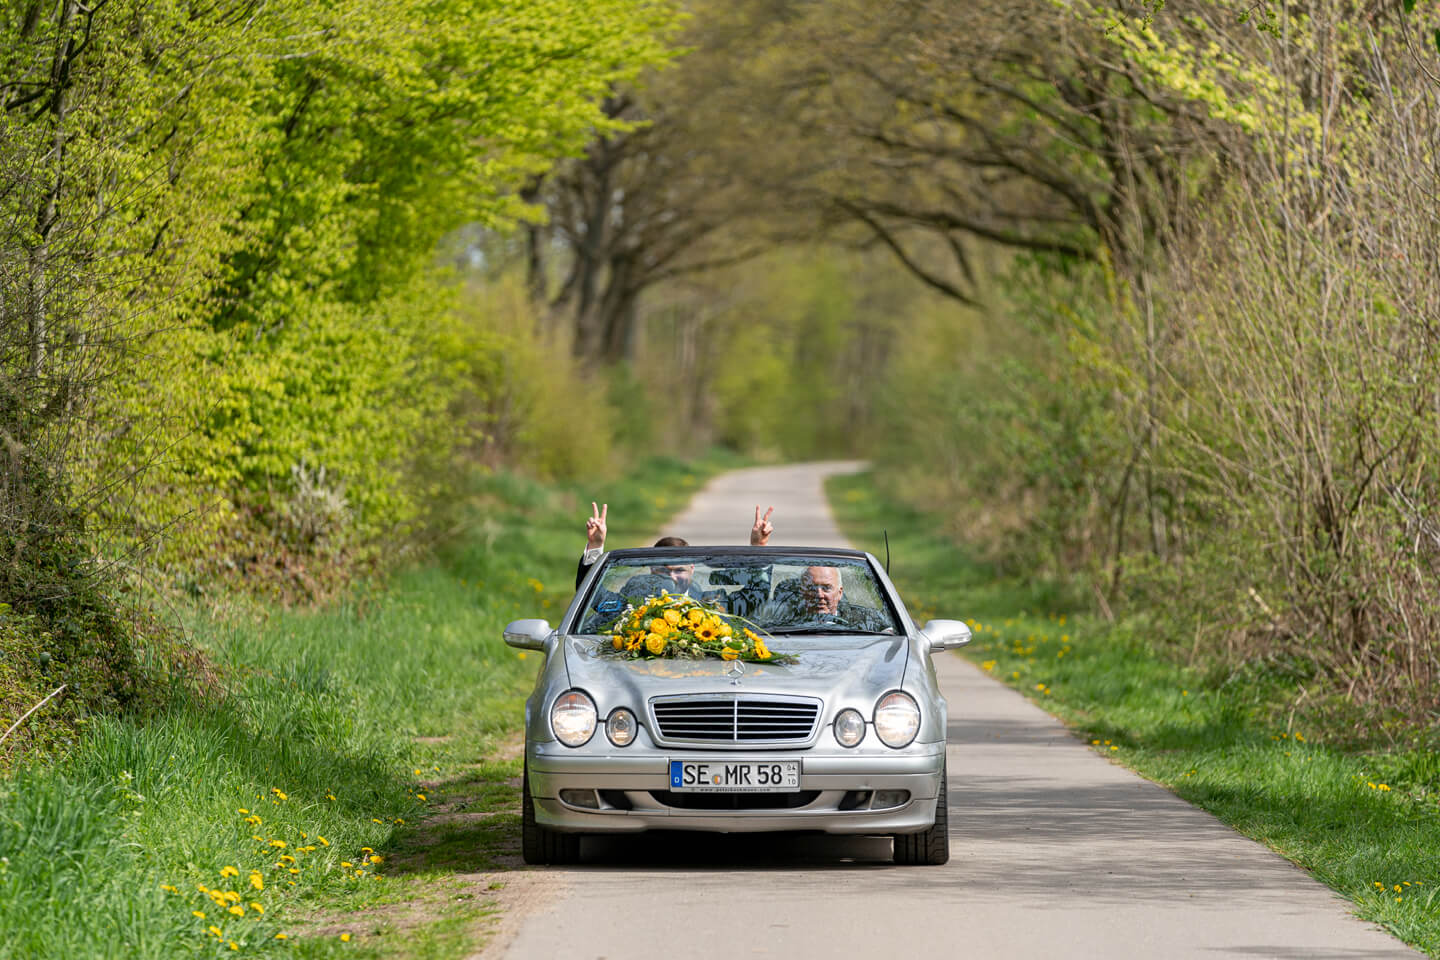 Hochzeitsauto mit gelbem Blumenschmuck.